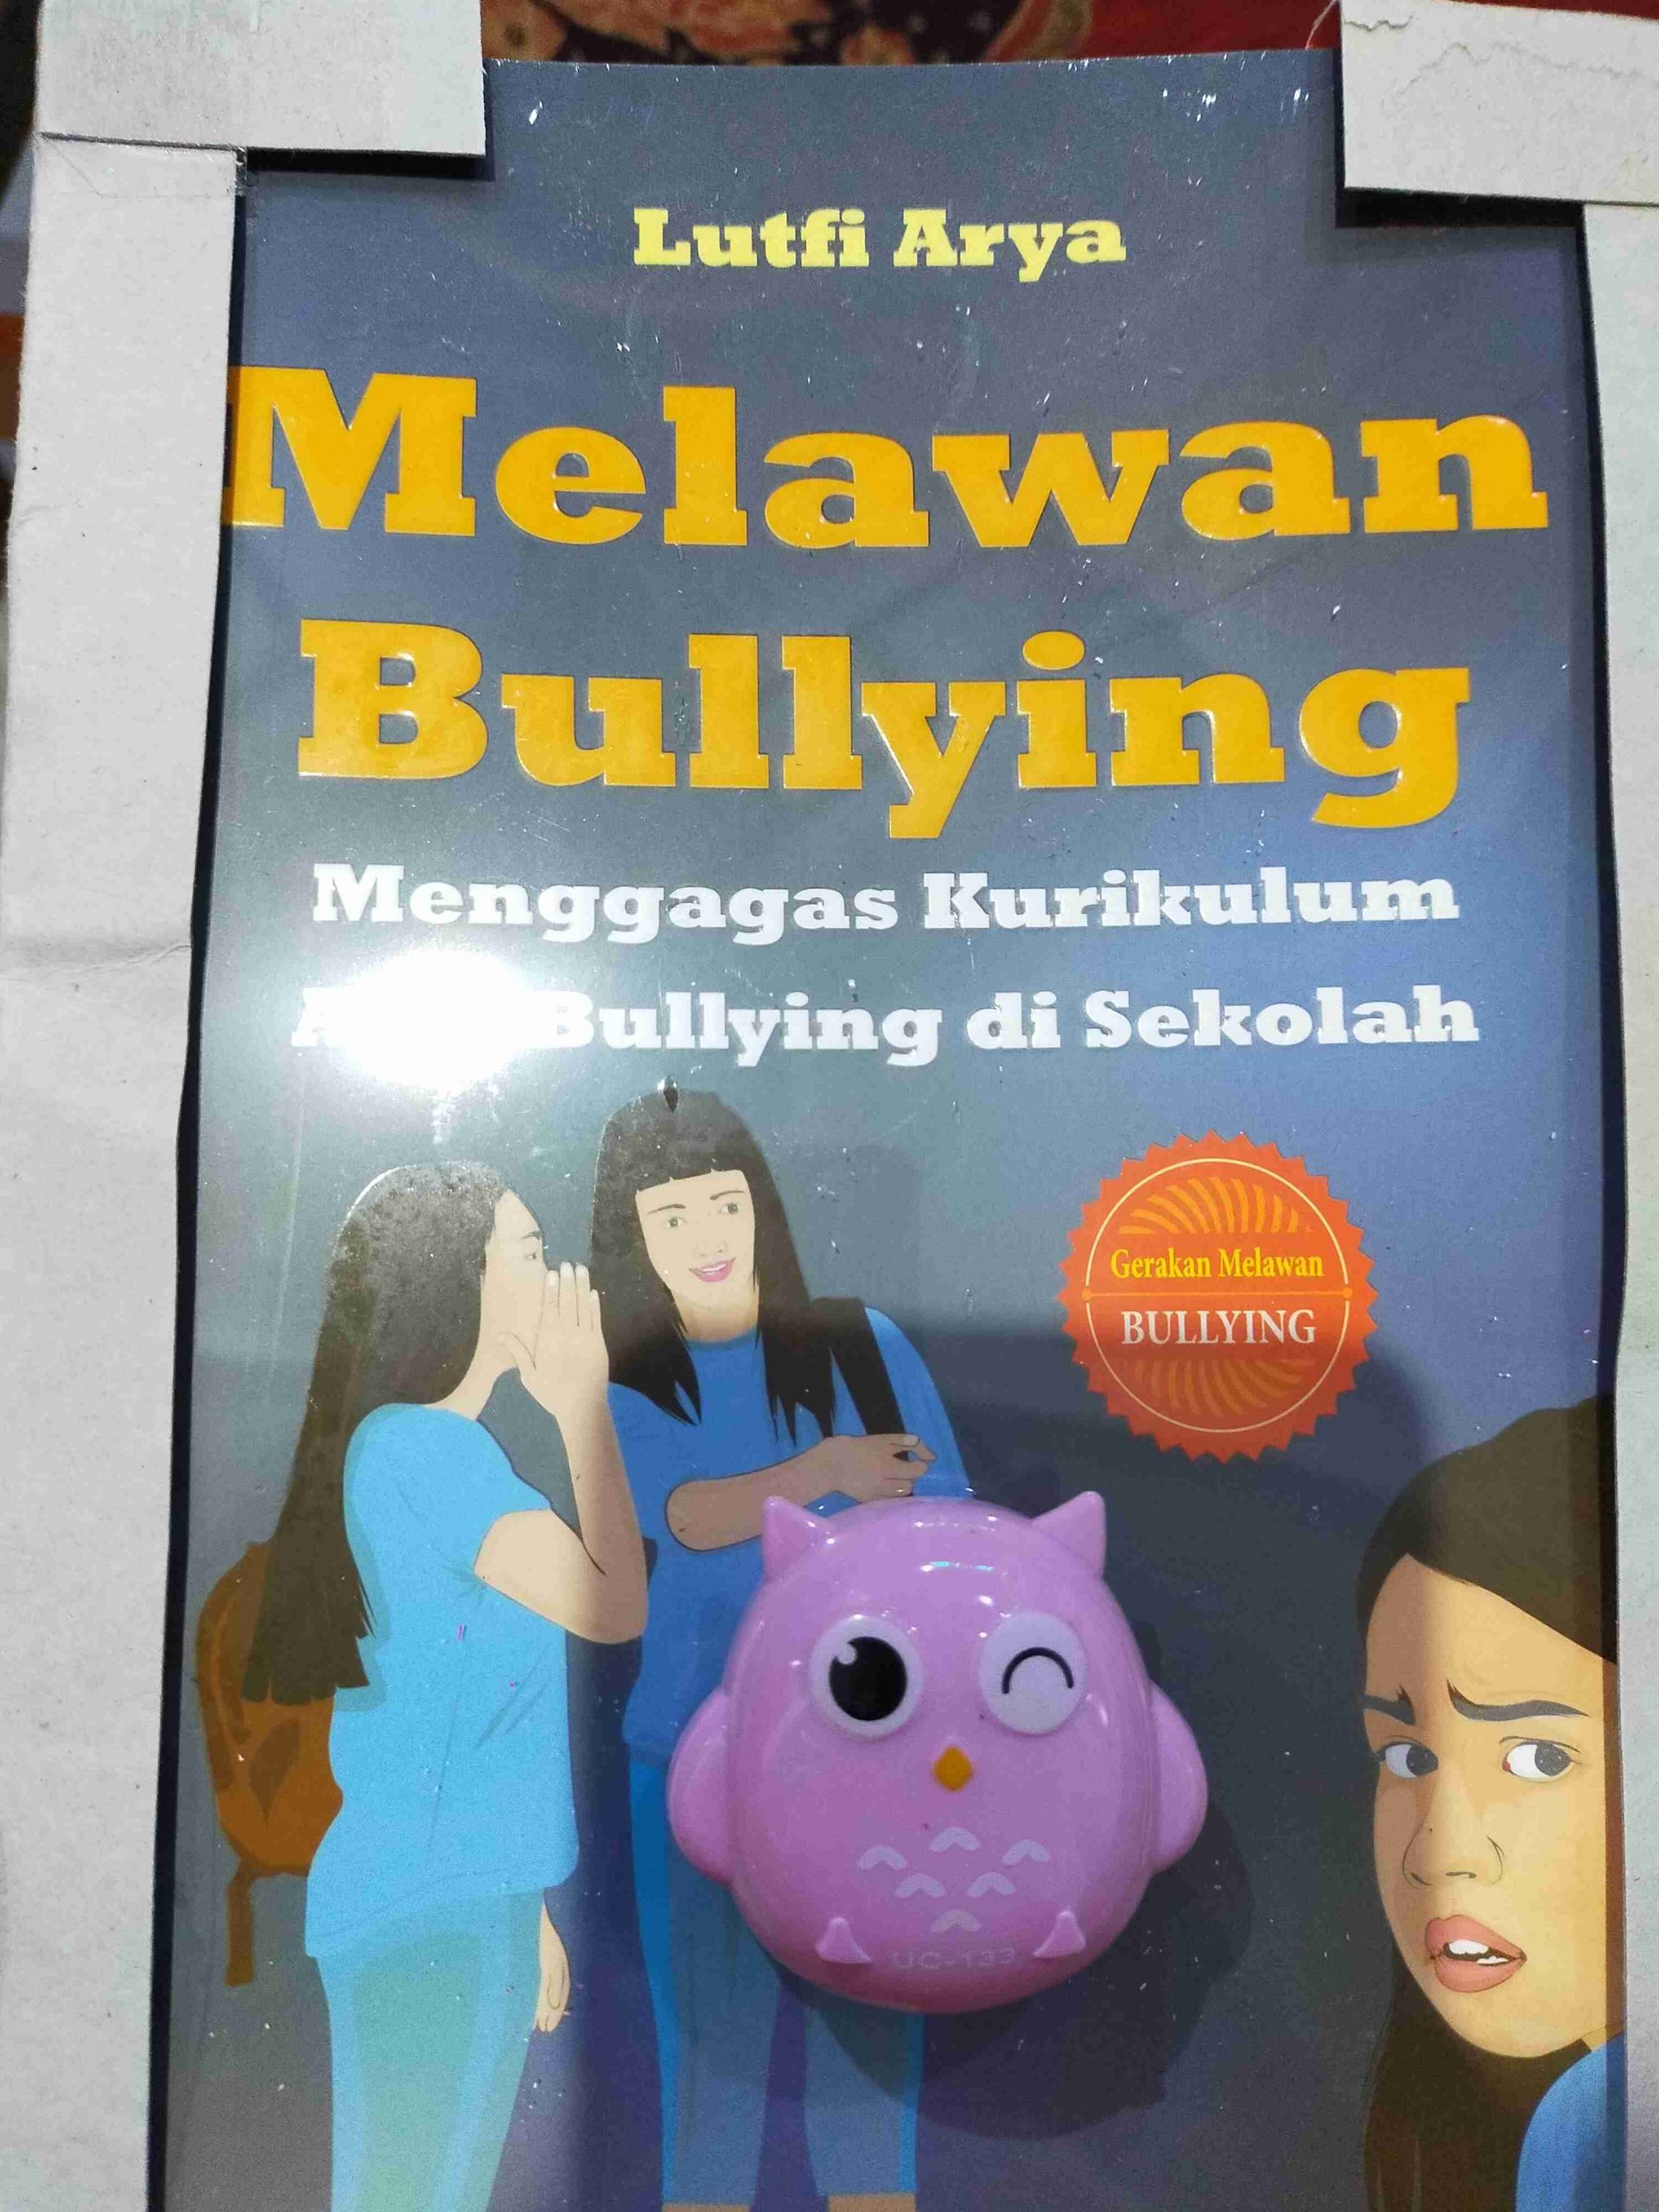 6 Buku Bully untuk mengajarkan Melawan Bullying